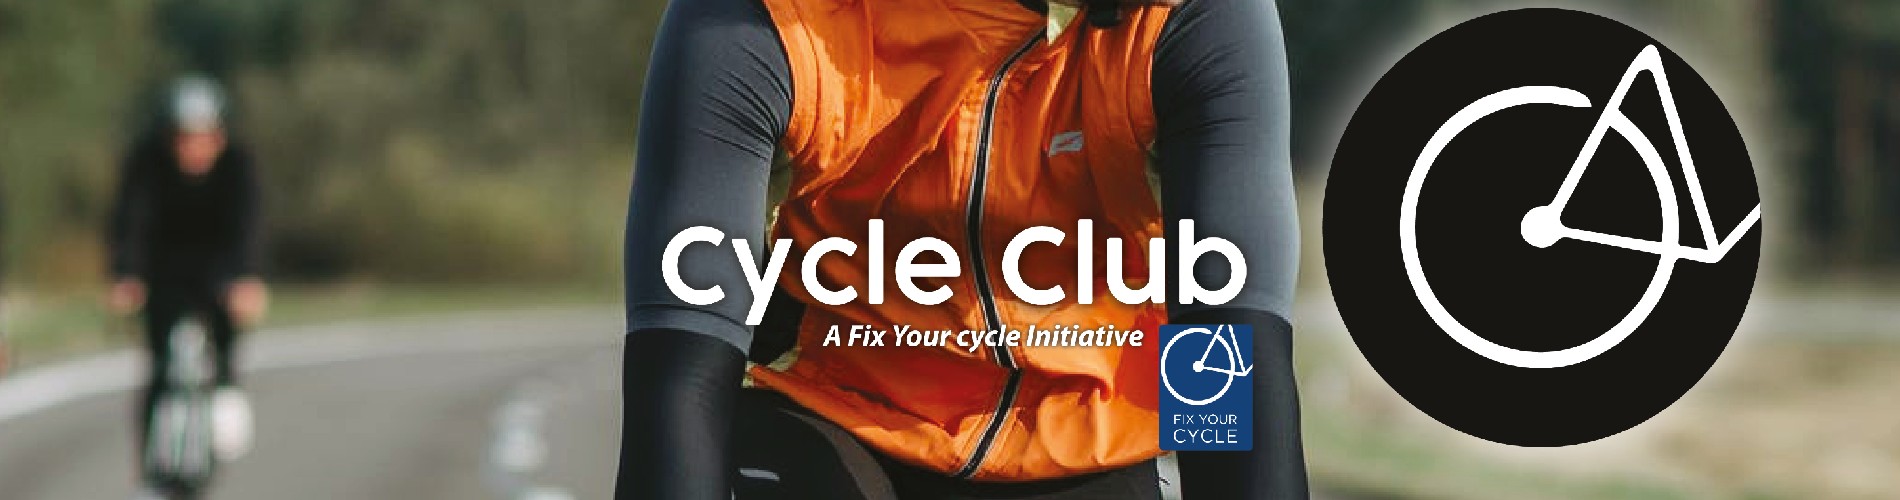 FYC cycle club 1900x500.jpg